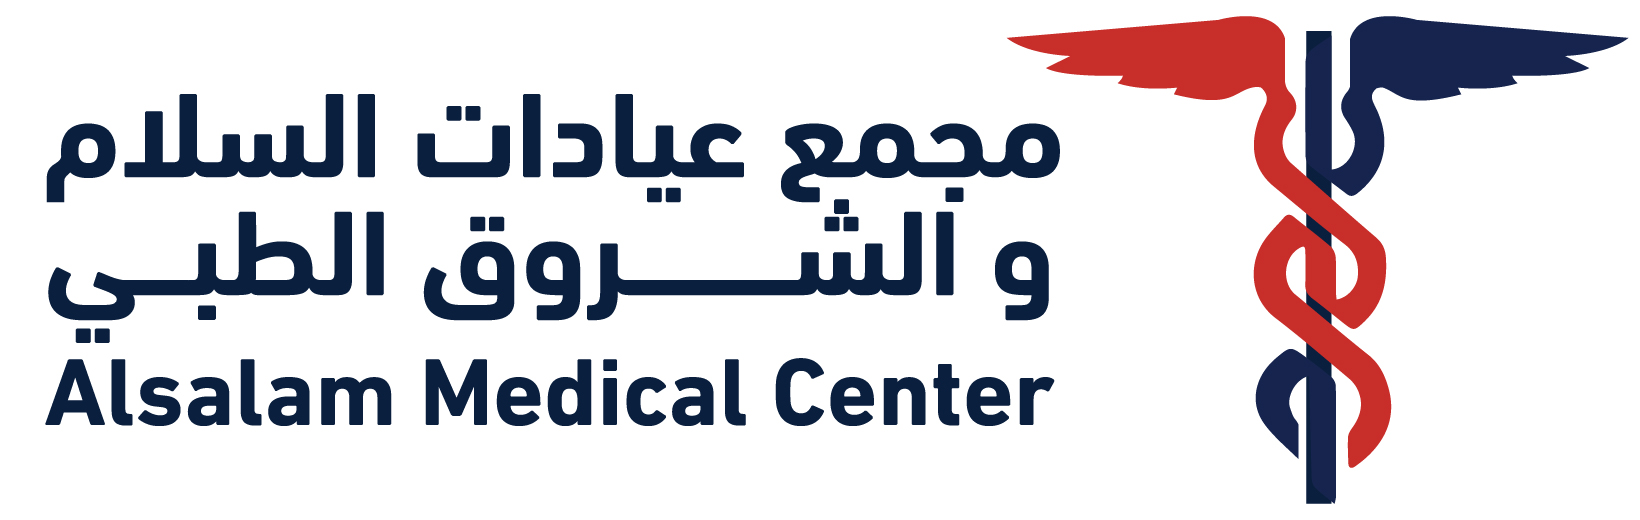 alsalam medical logo